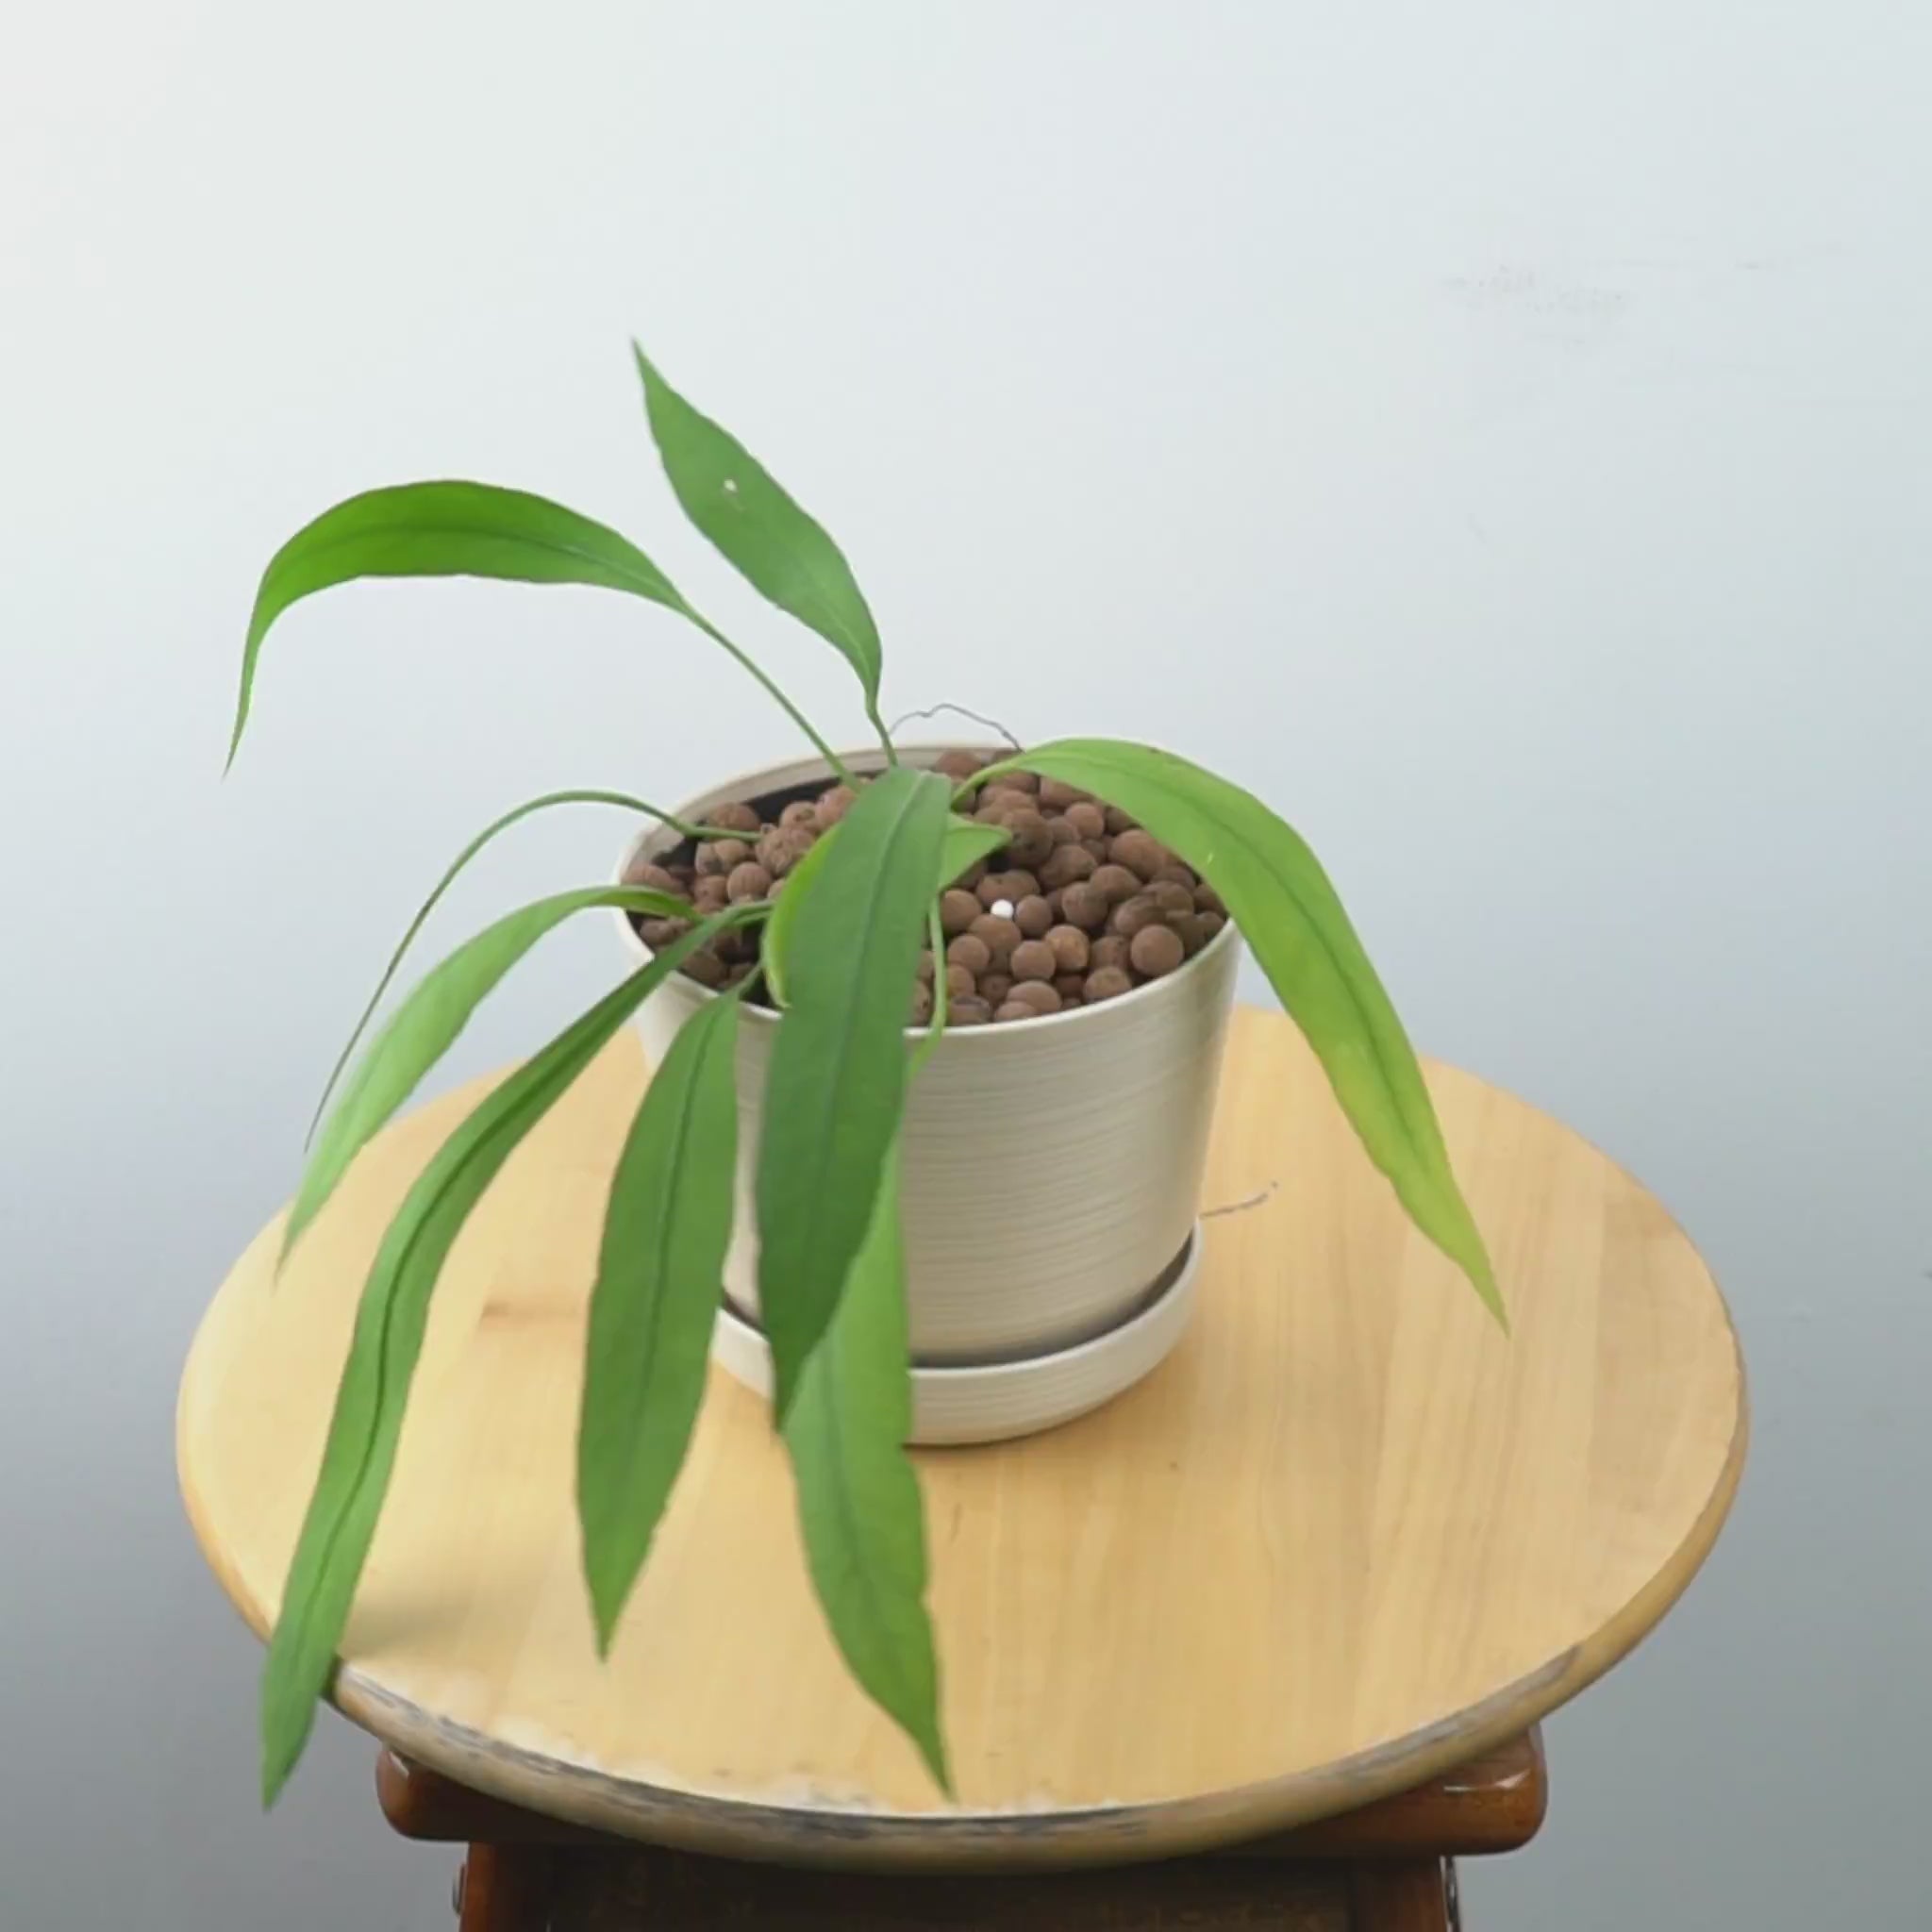 Anthurium vittarifolium - Greenspaces.id